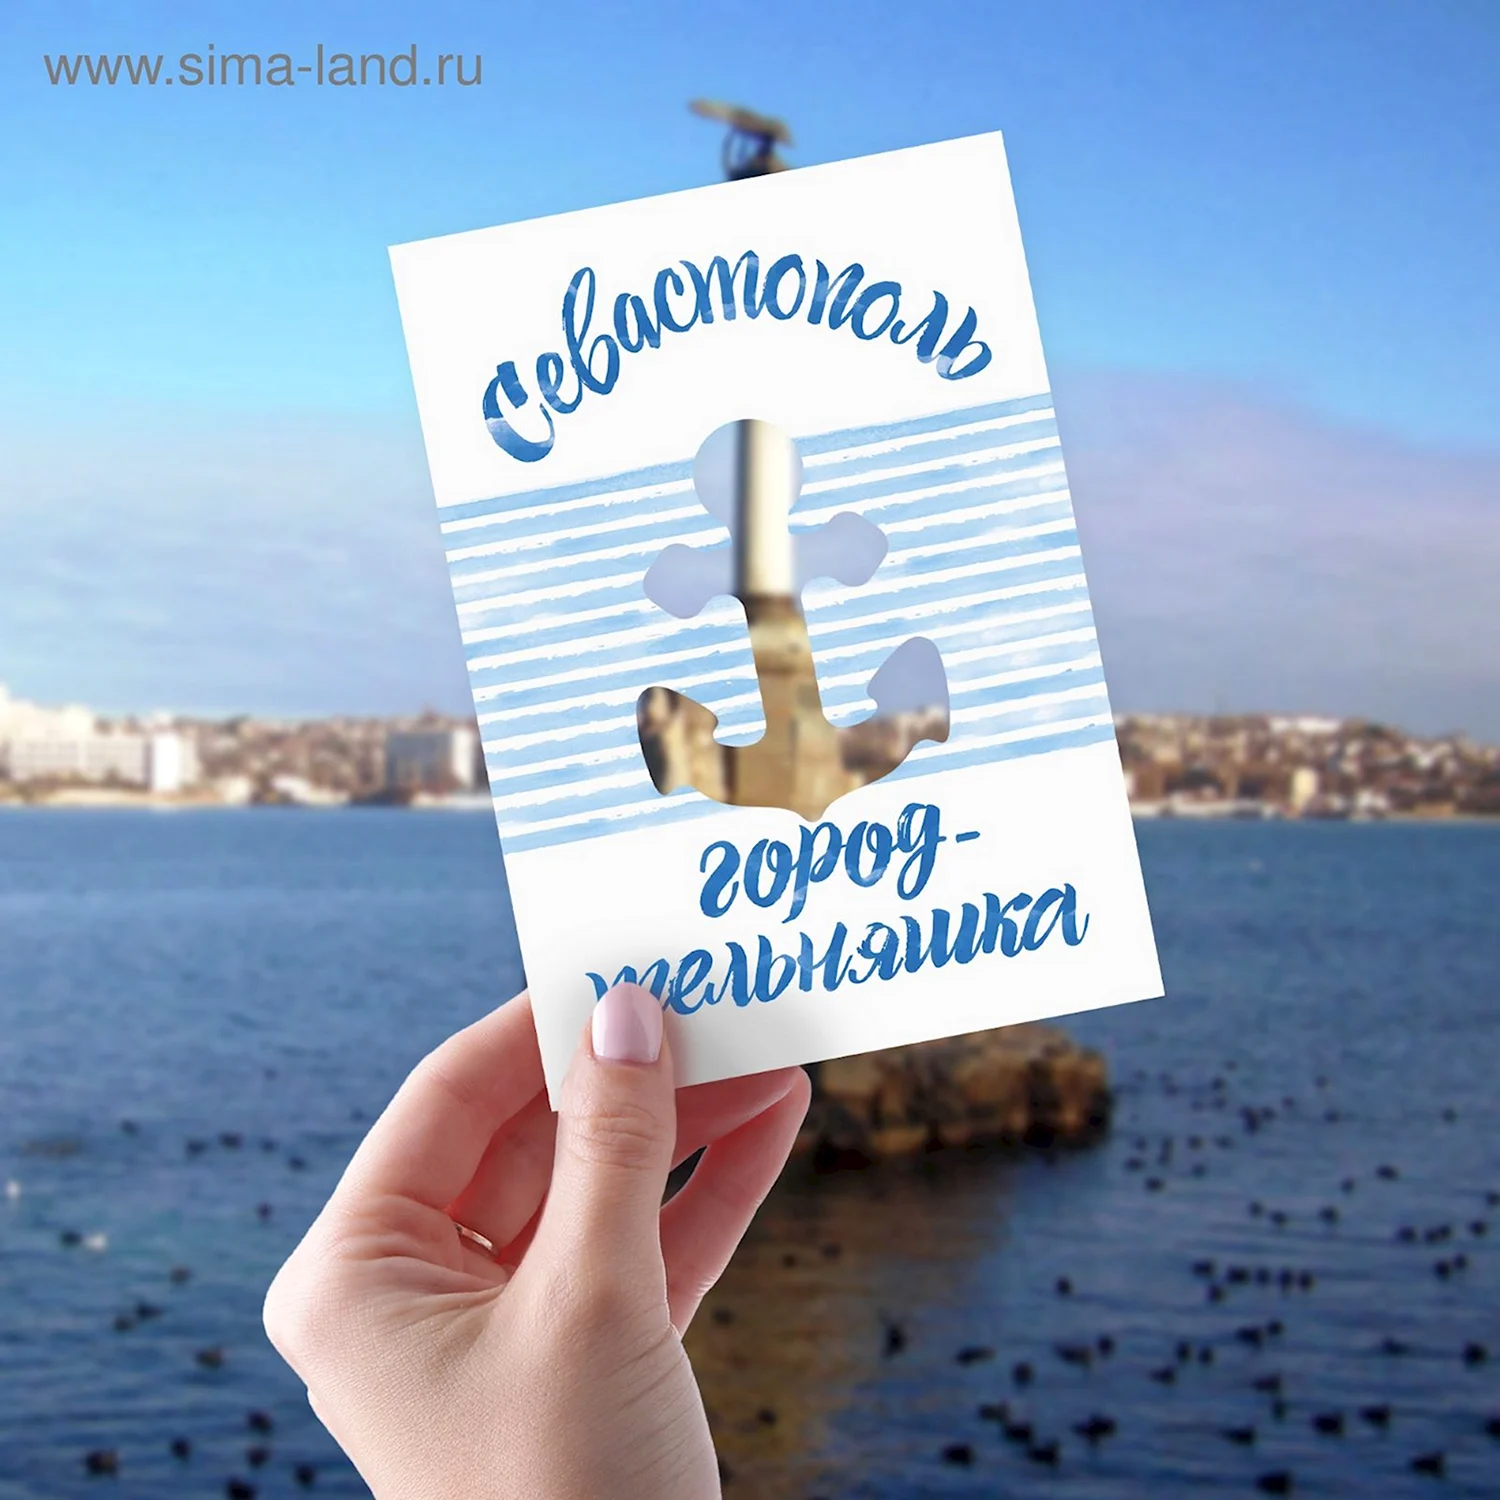 Севастополь - Интернет-магазин - Почтовые открытки для посткроссинга